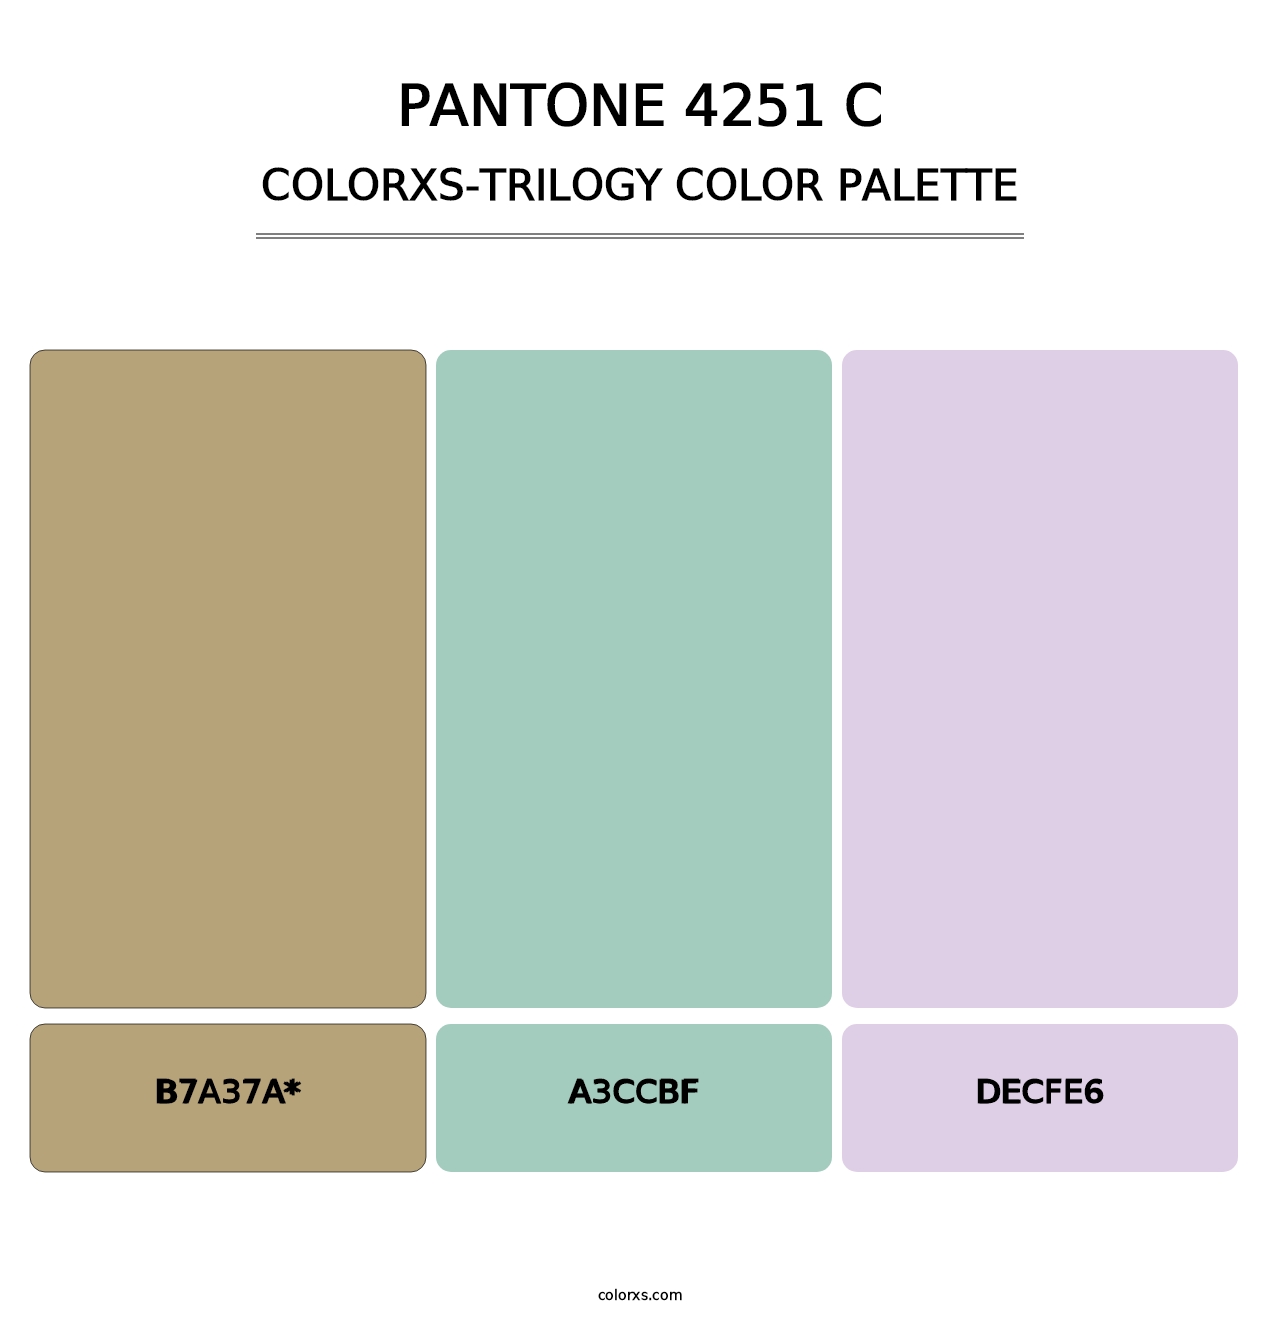 PANTONE 4251 C - Colorxs Trilogy Palette